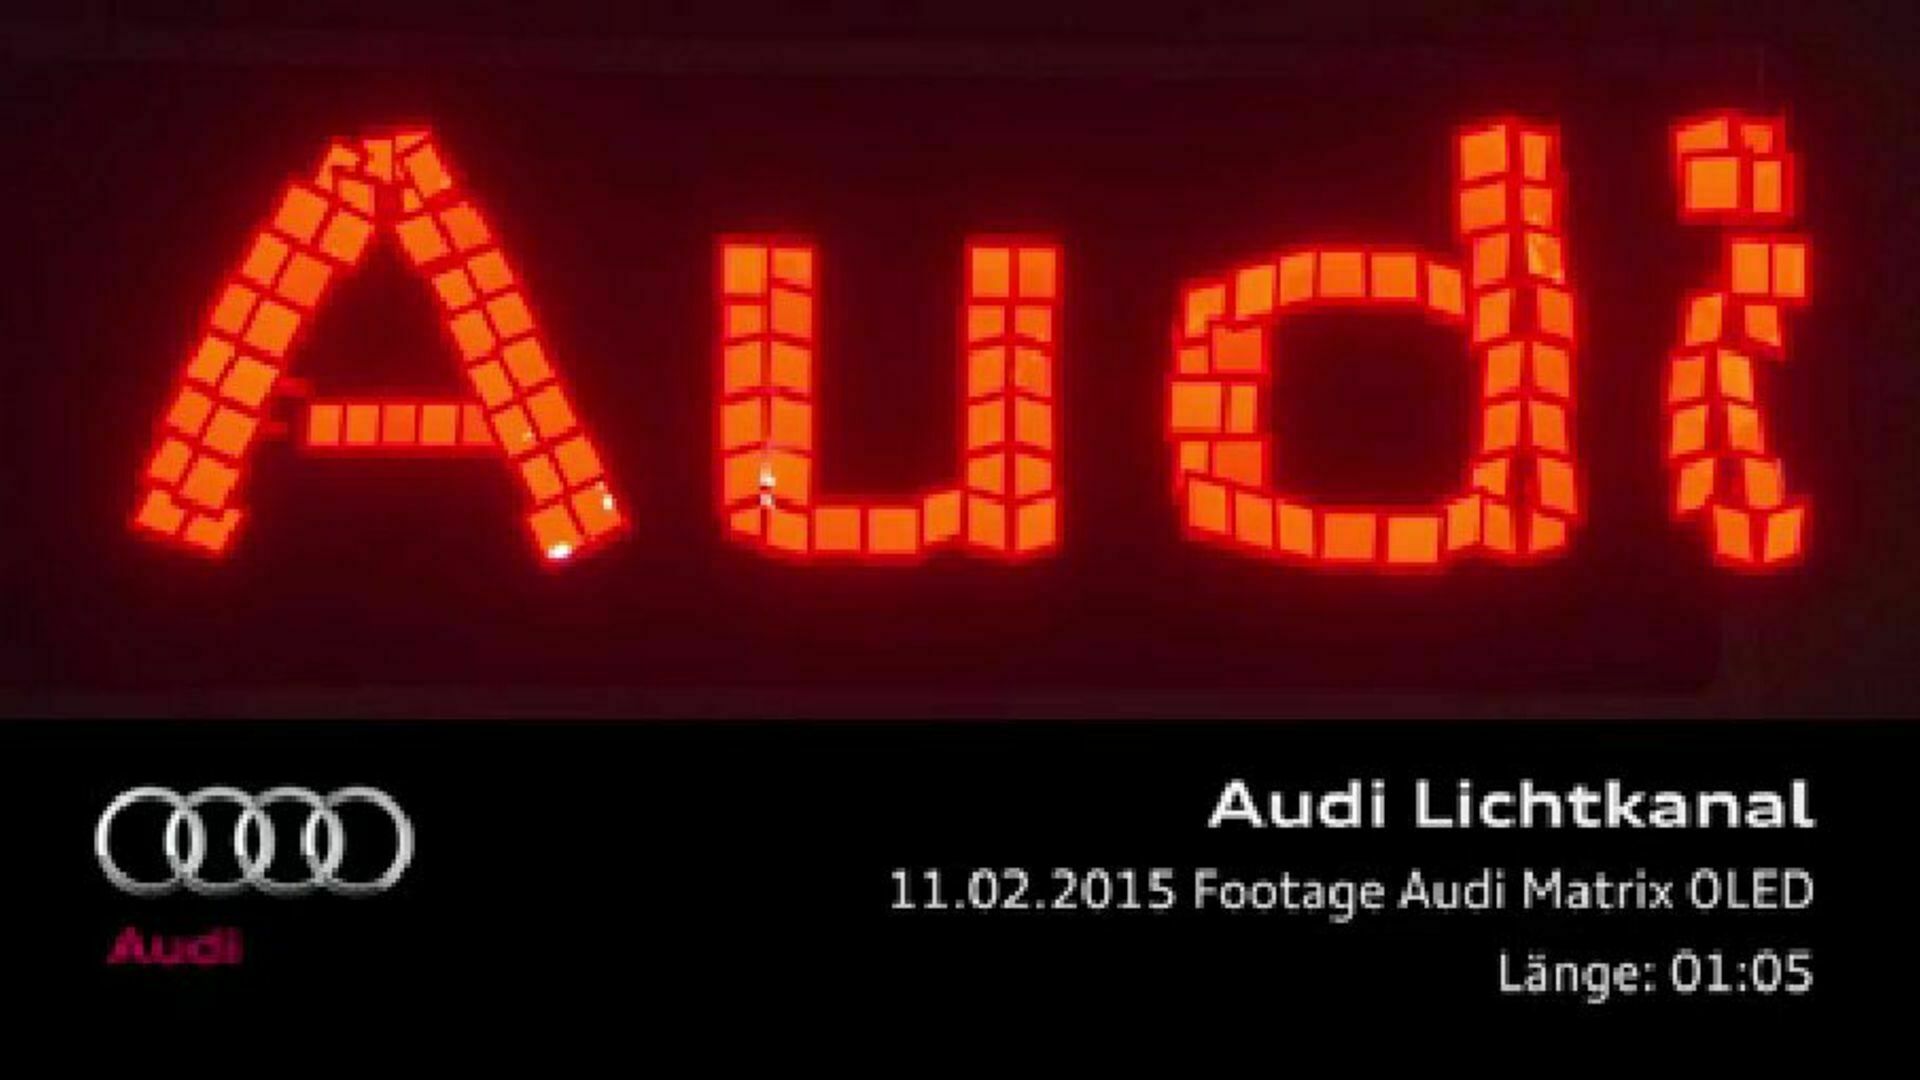 Audi future lab - Footage Audi Matrix OLED